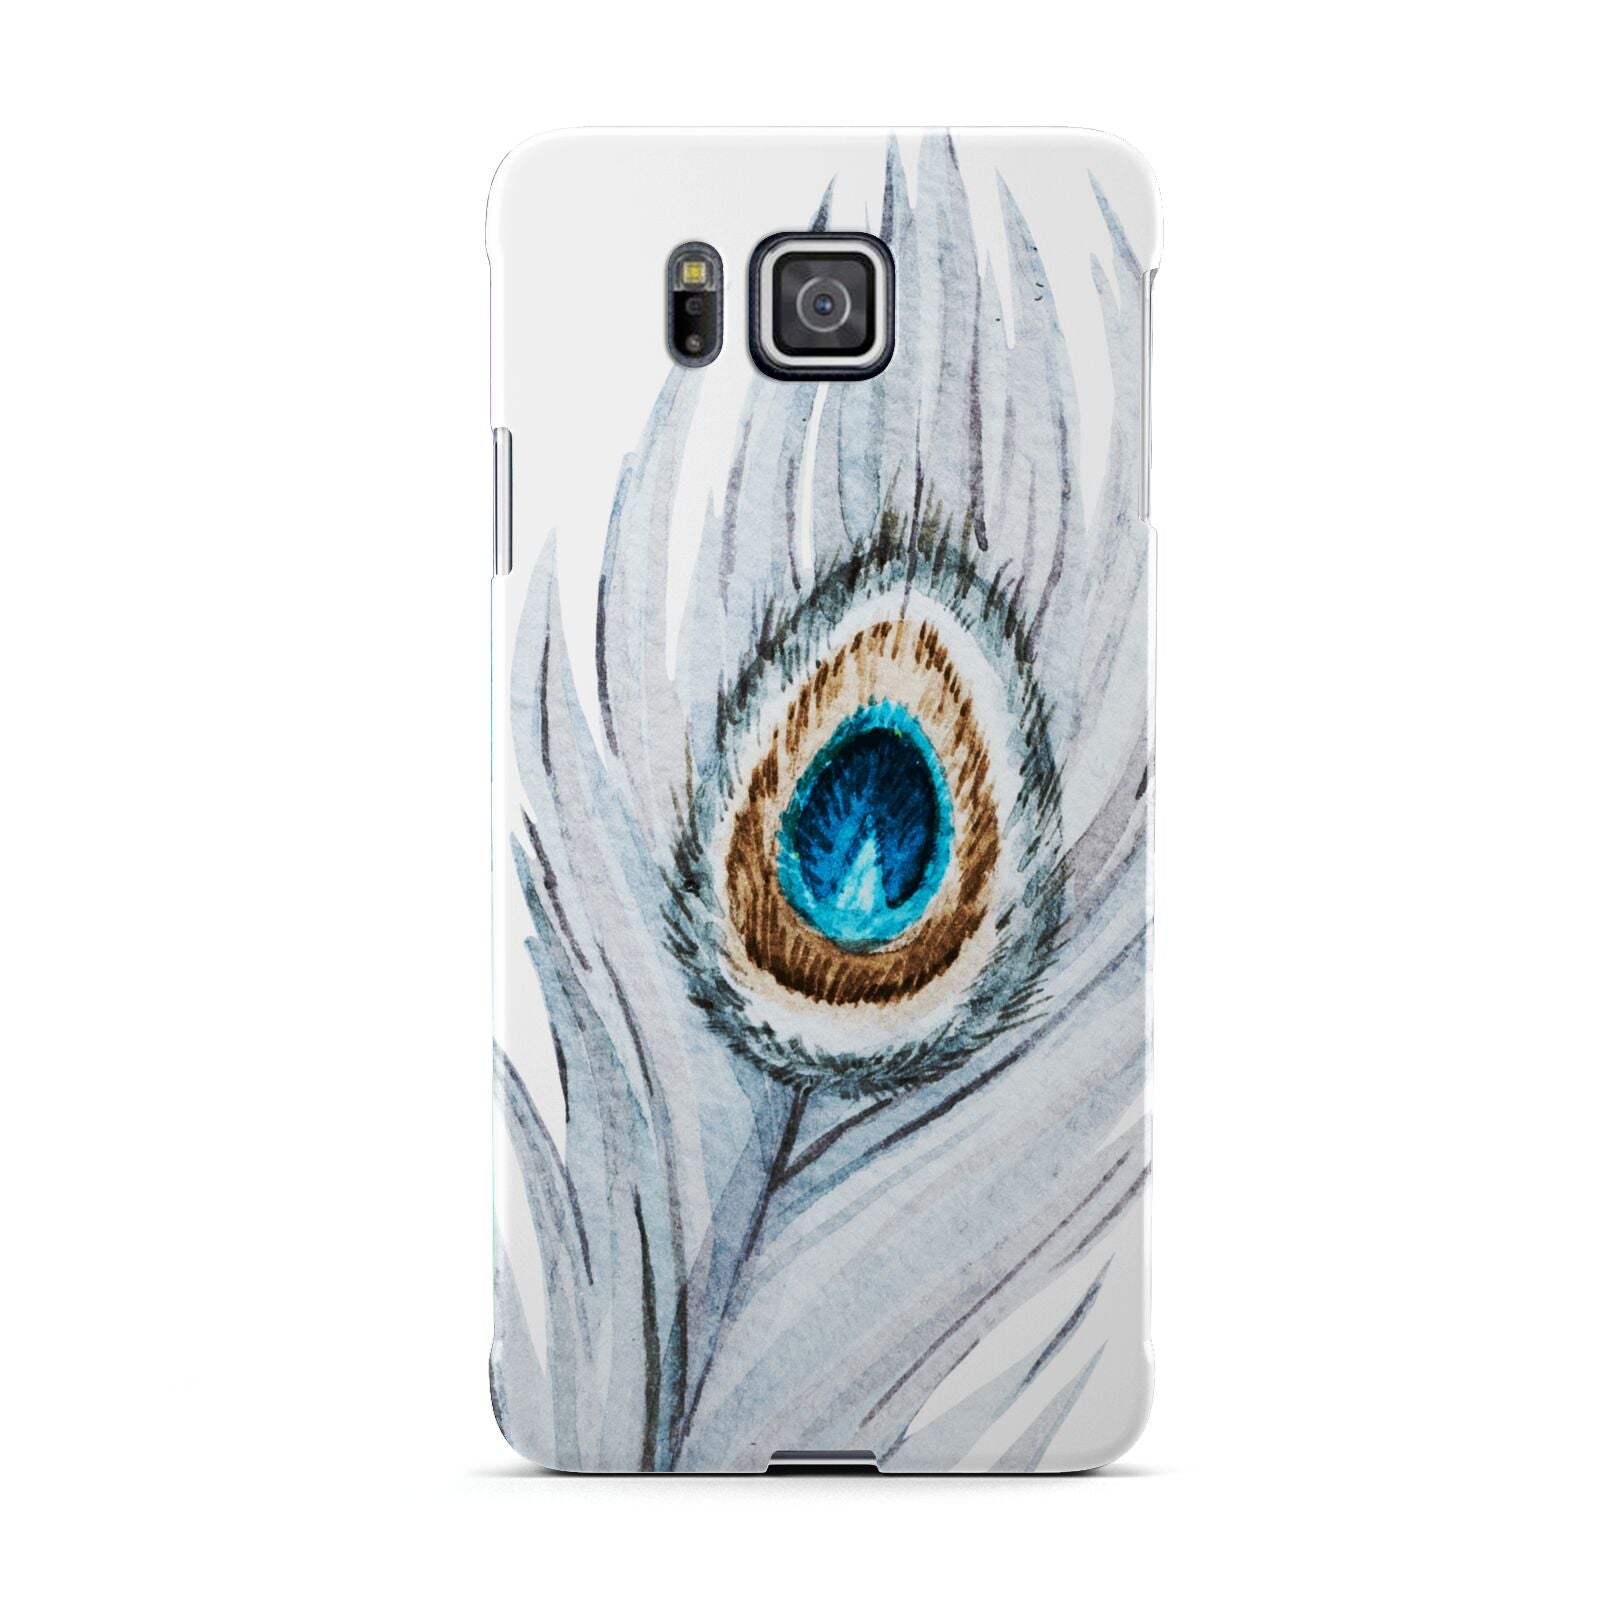 Peacock Samsung Galaxy Alpha Case